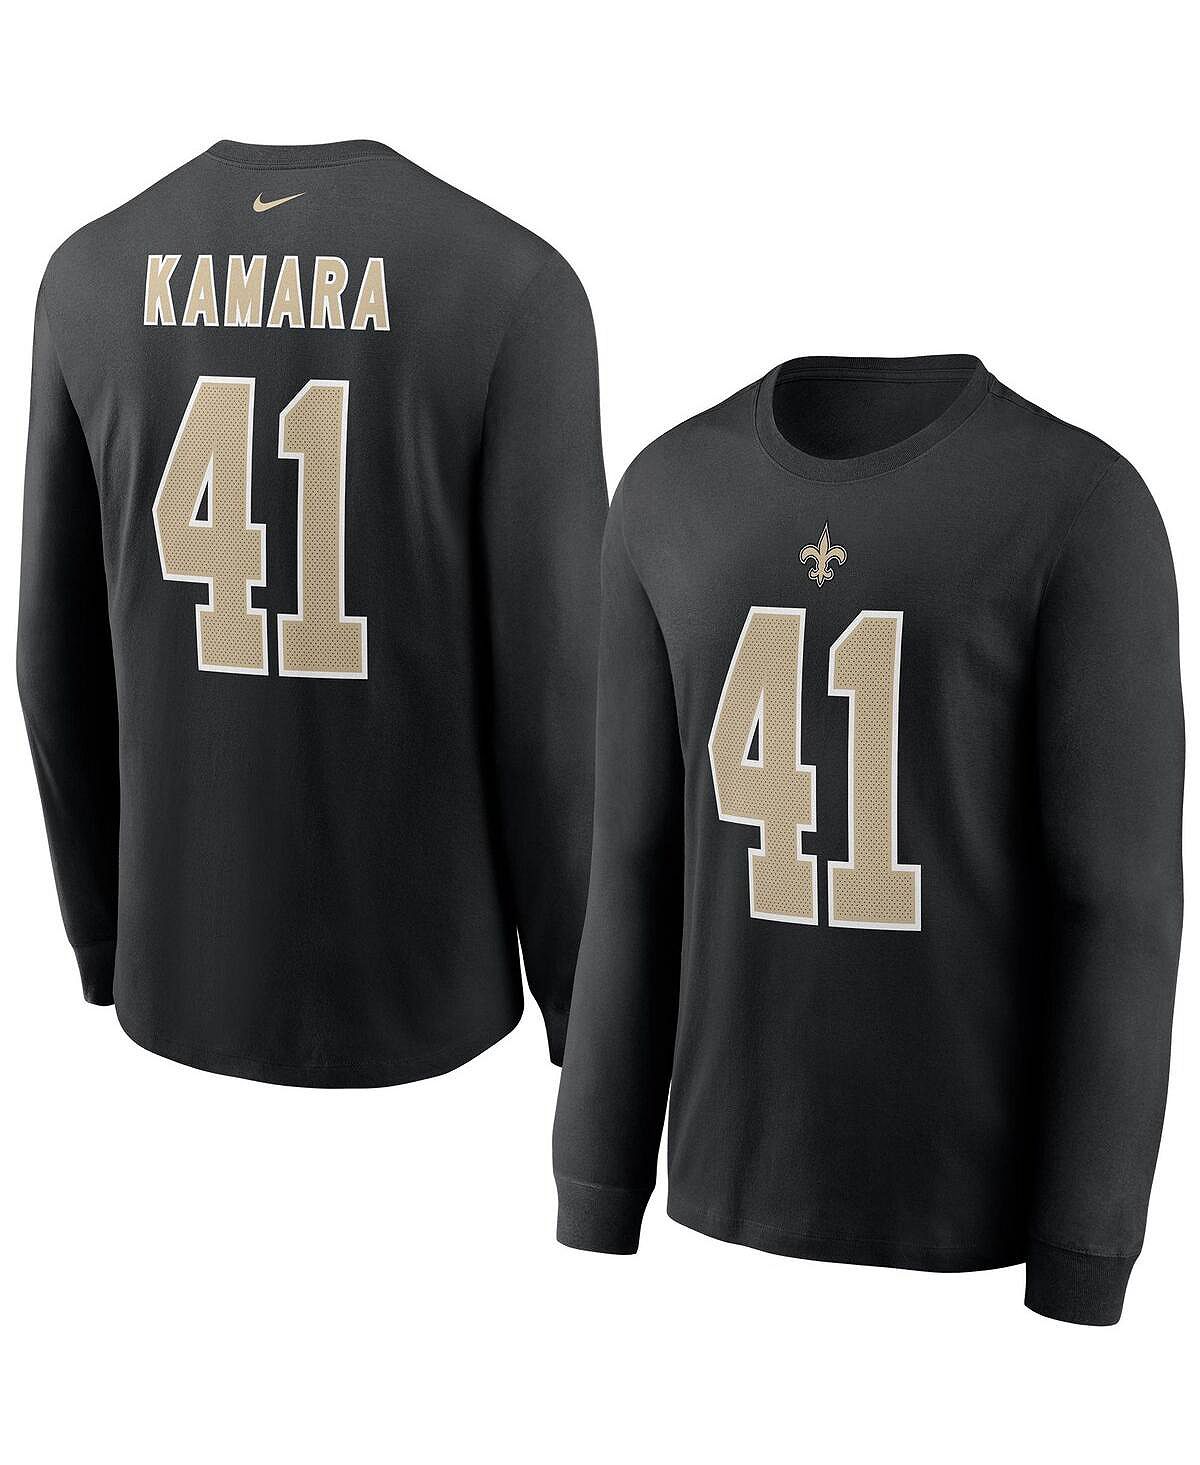 цена Мужская черная футболка с длинным рукавом Alvin Kamara New Orleans Saints, имя и номер игрока Nike